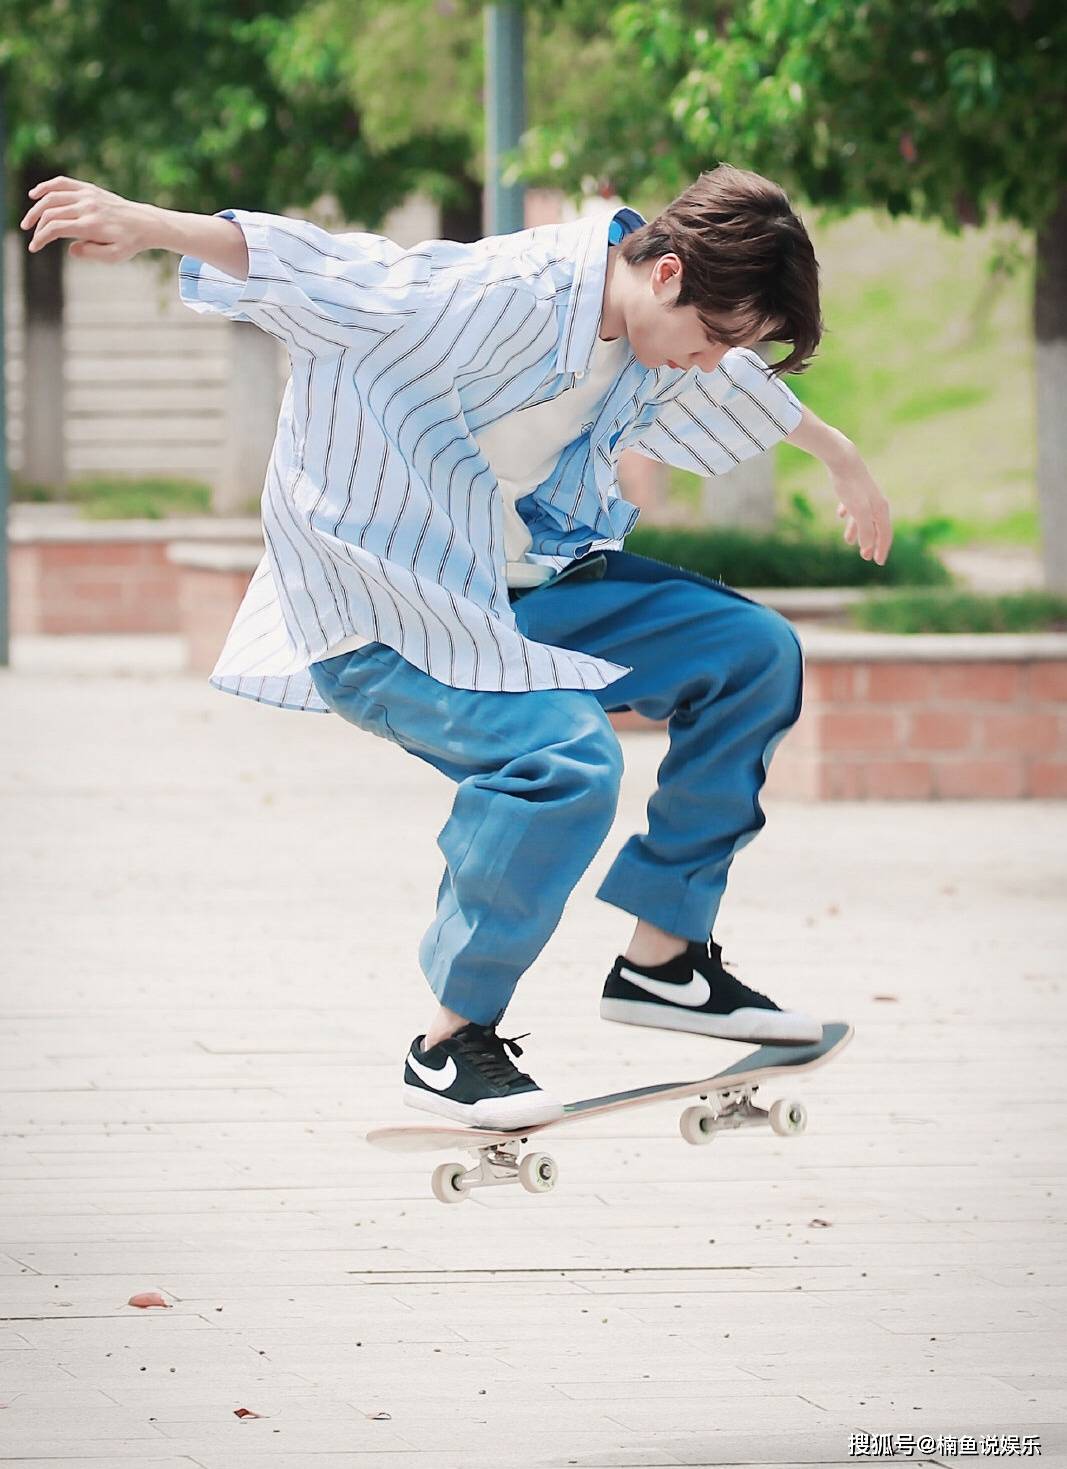 原创24岁王一博又帅出圈了,穿条纹衬衫玩滑板,活力少年感好喜欢